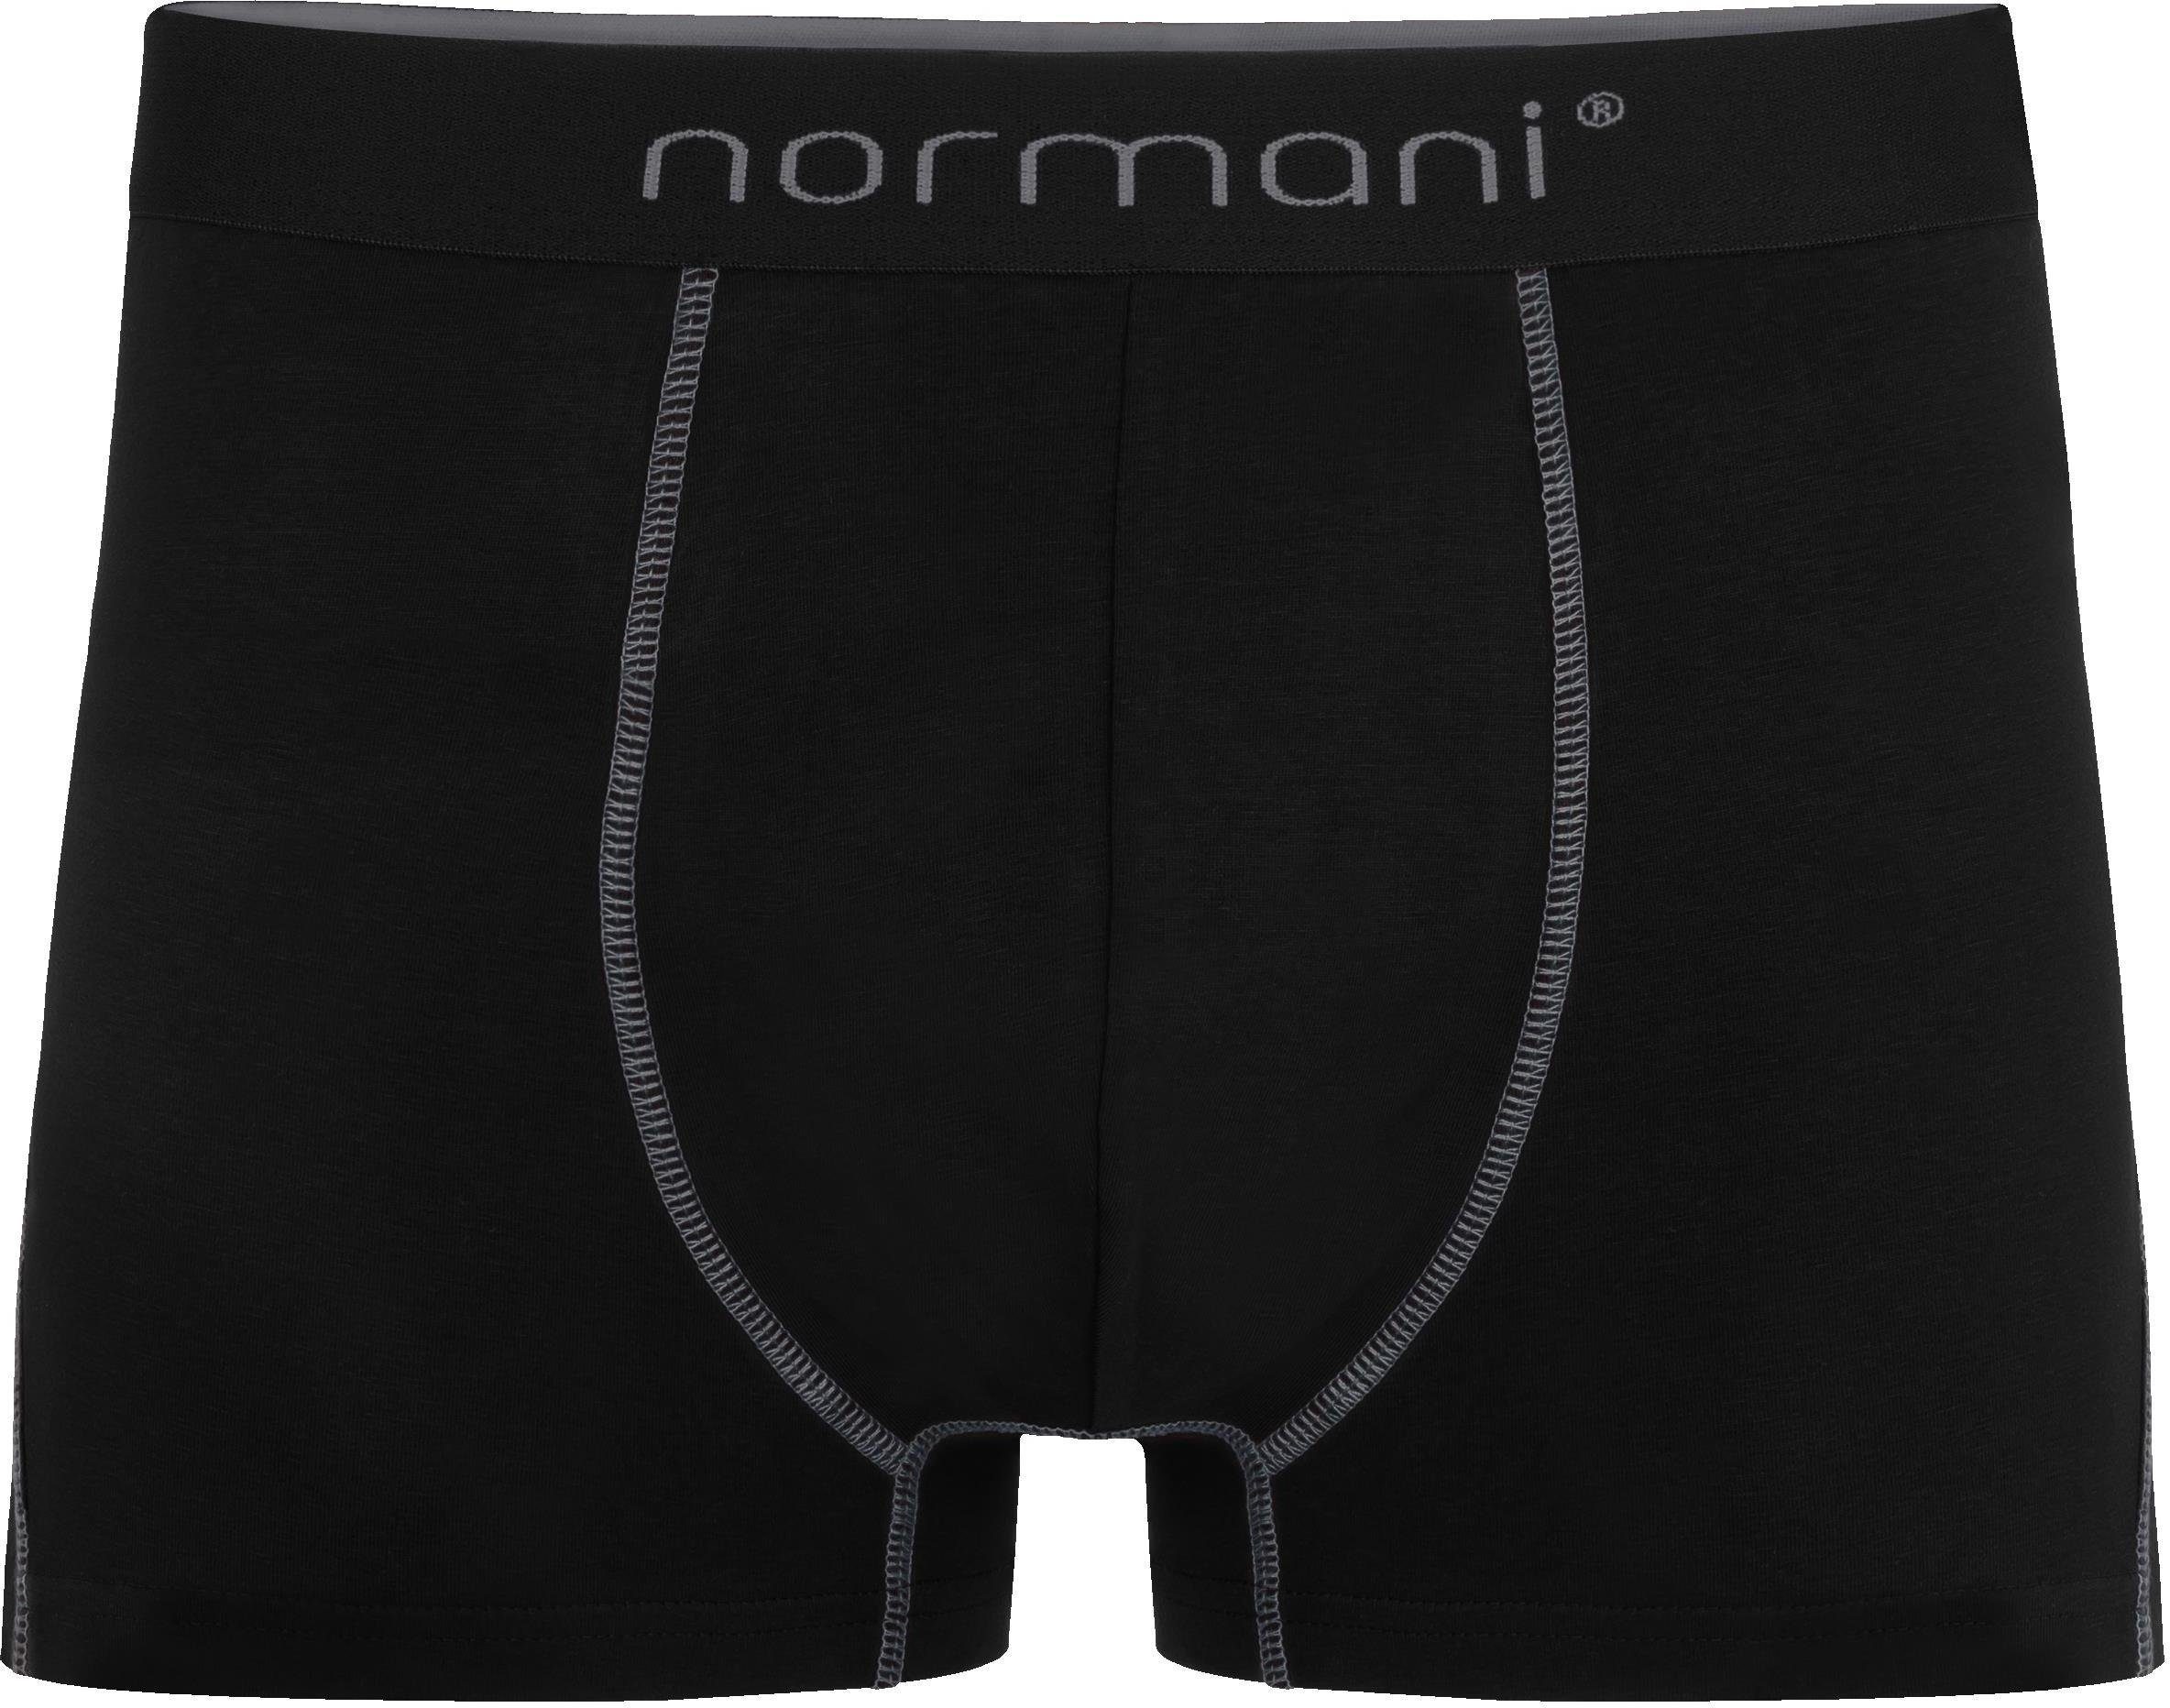 aus für Männer 12 normani Herren atmungsaktiver Baumwolle Boxershorts Grau/Dunkelblau/Schwarz x Unterhose Baumwoll-Boxershorts